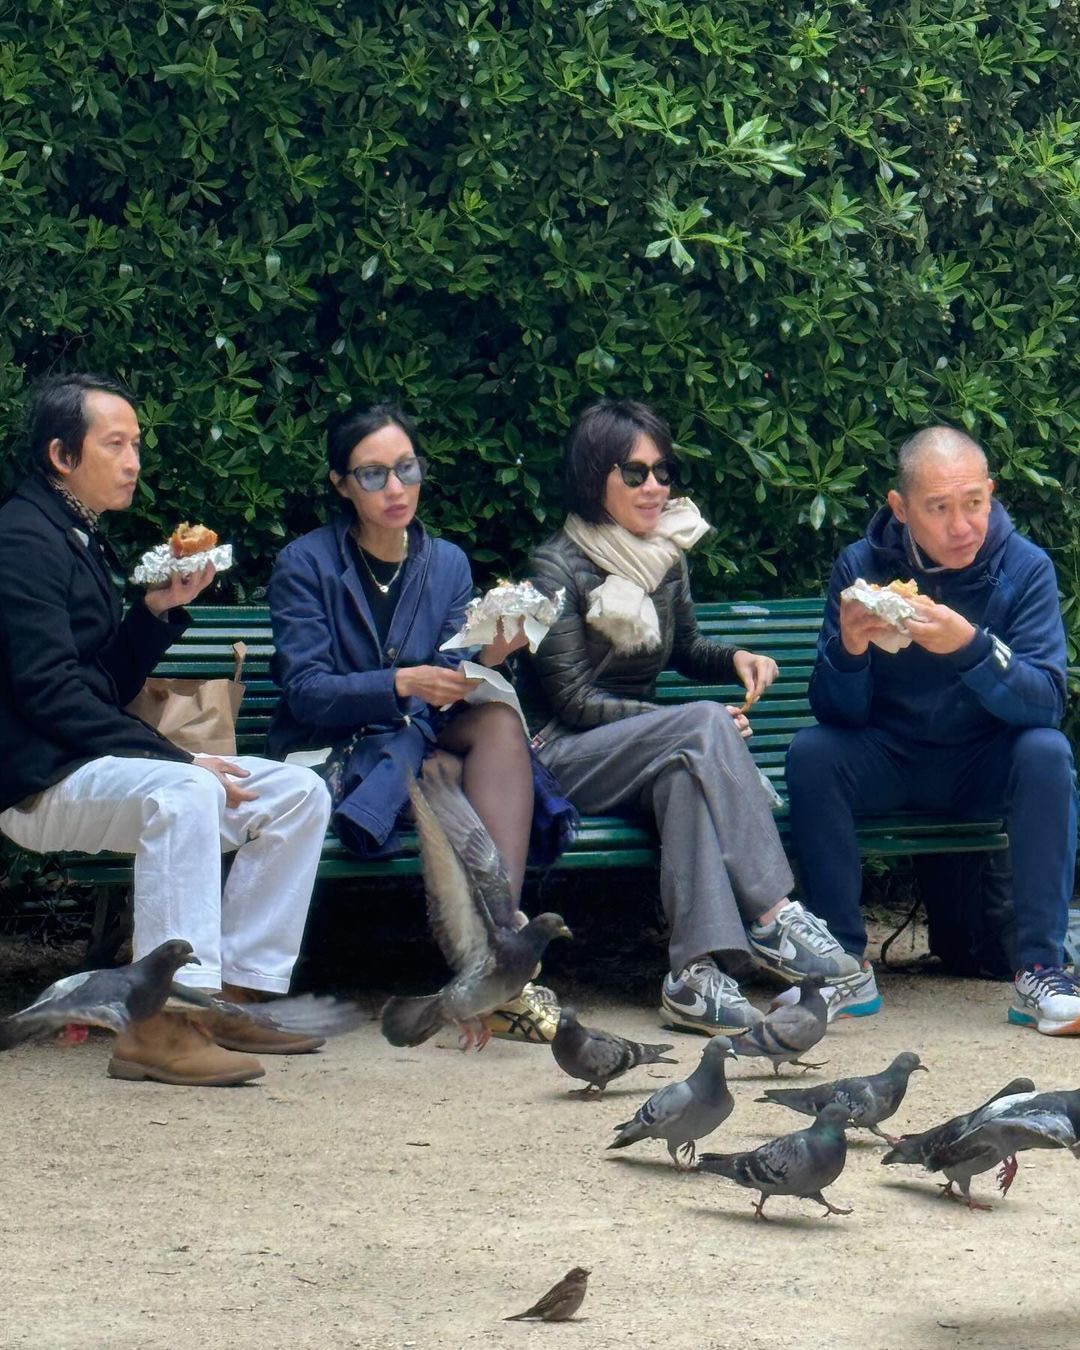 Vợ chồng Trần Anh Hùng và Lương Triều Vỹ cùng ngồi trong khuôn viên bảo tàng ăn bánh mì, ngắm bồ câu - Ảnh: Instagram Lưu Gia Linh